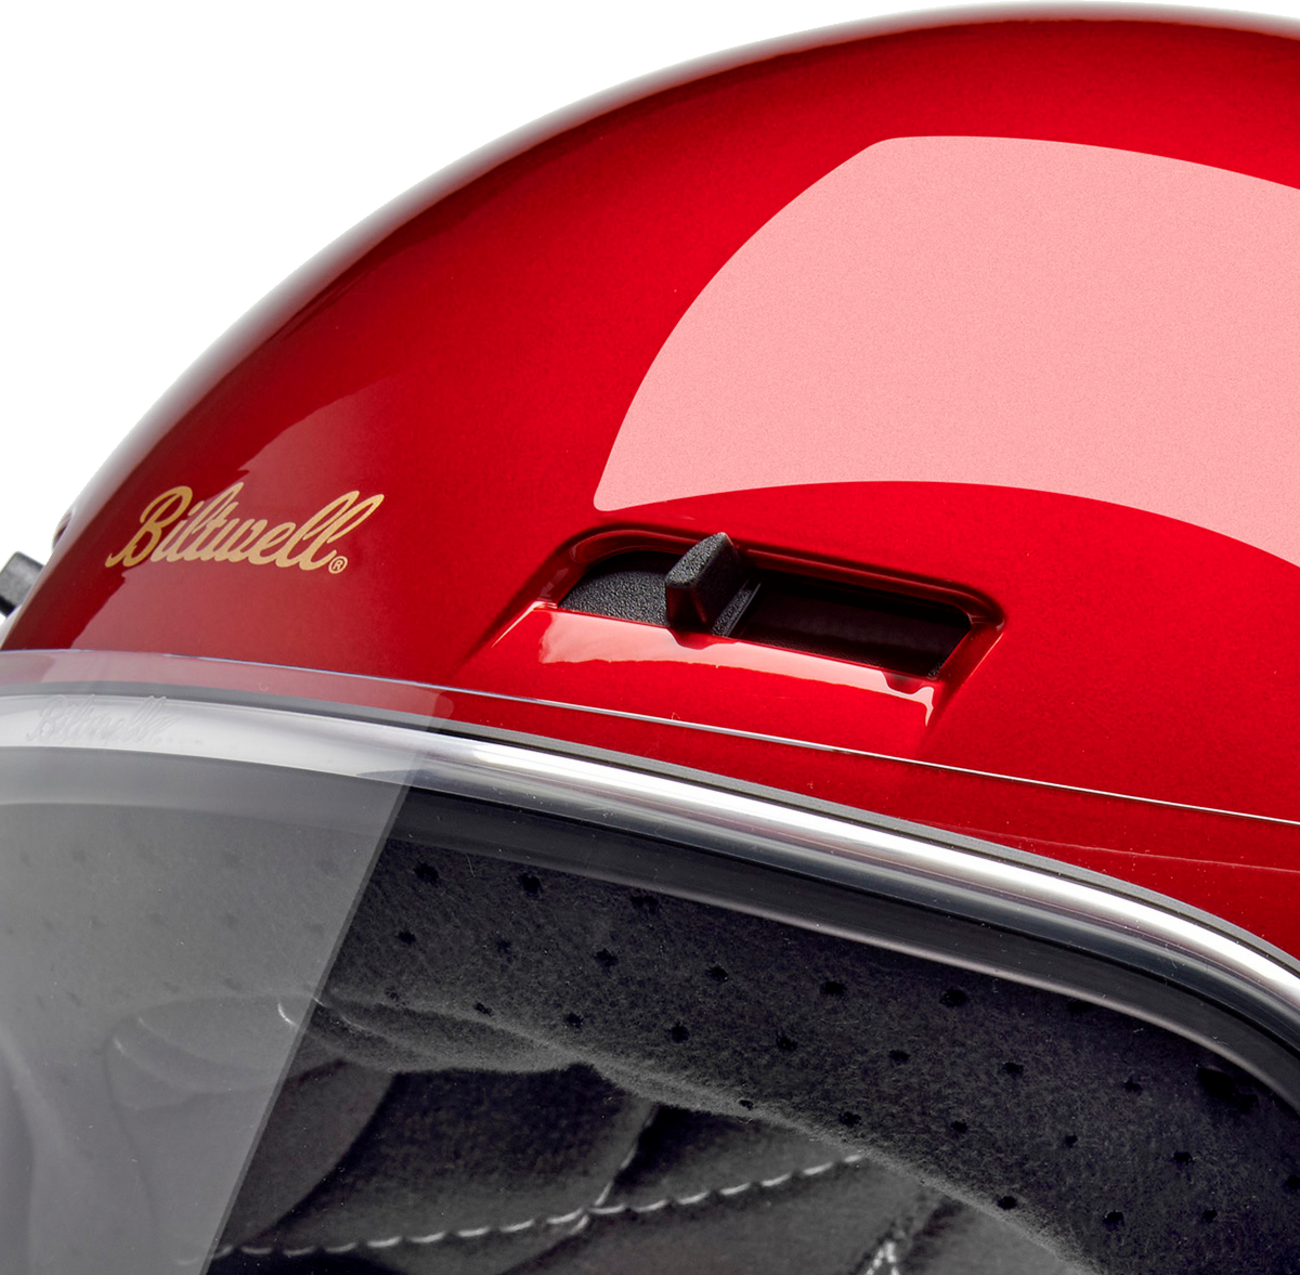 BILTWELL Gringo SV Helmet - Metallic Cherry Red - XS 1006-351-501